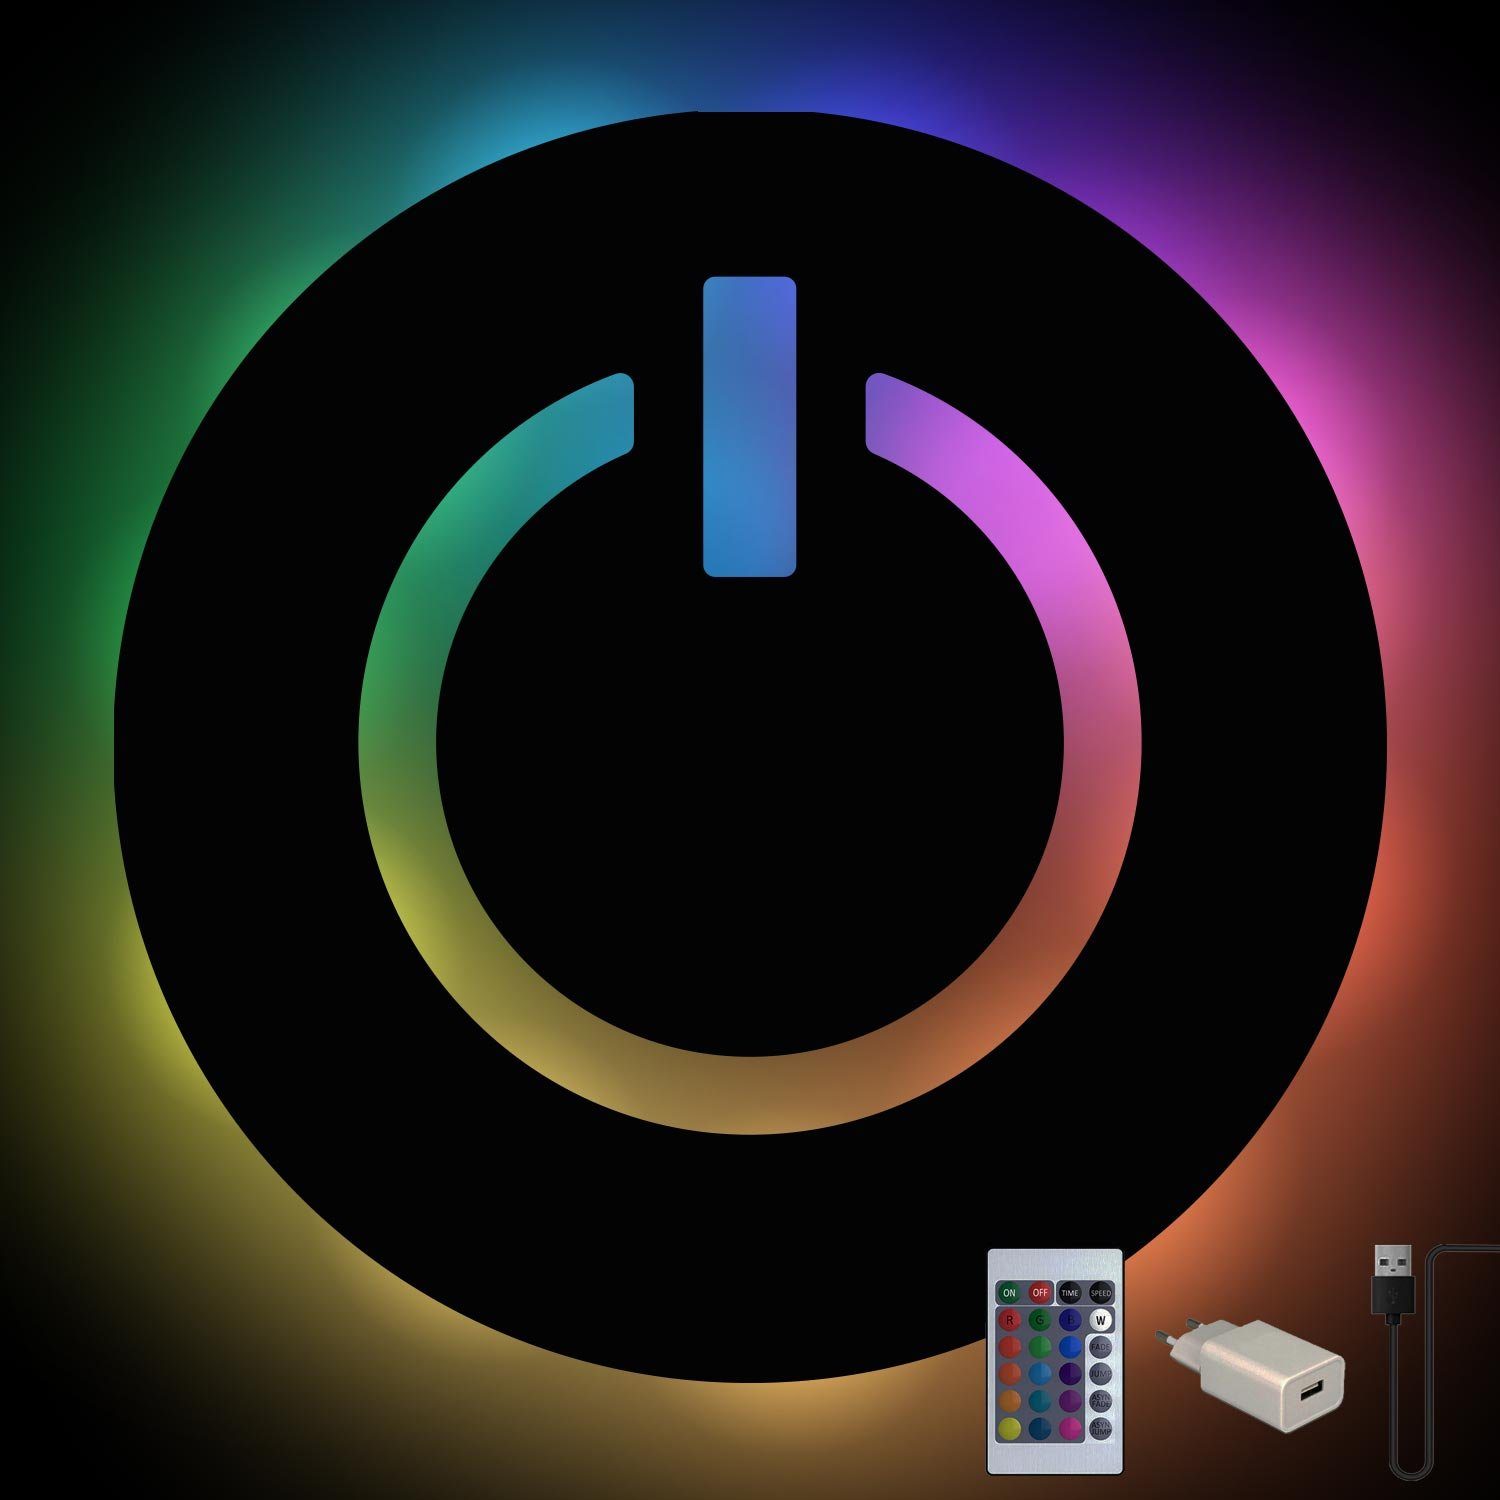 Power IT Leuchte RGB Farbwechsel, Namofactur fest USB Fernbedienung mit Wanddeko, Deko Button Zocker LED Licht, Schwarz ON Freak, integriert, Gamer LED Computer Lampe Dekolicht Nerd